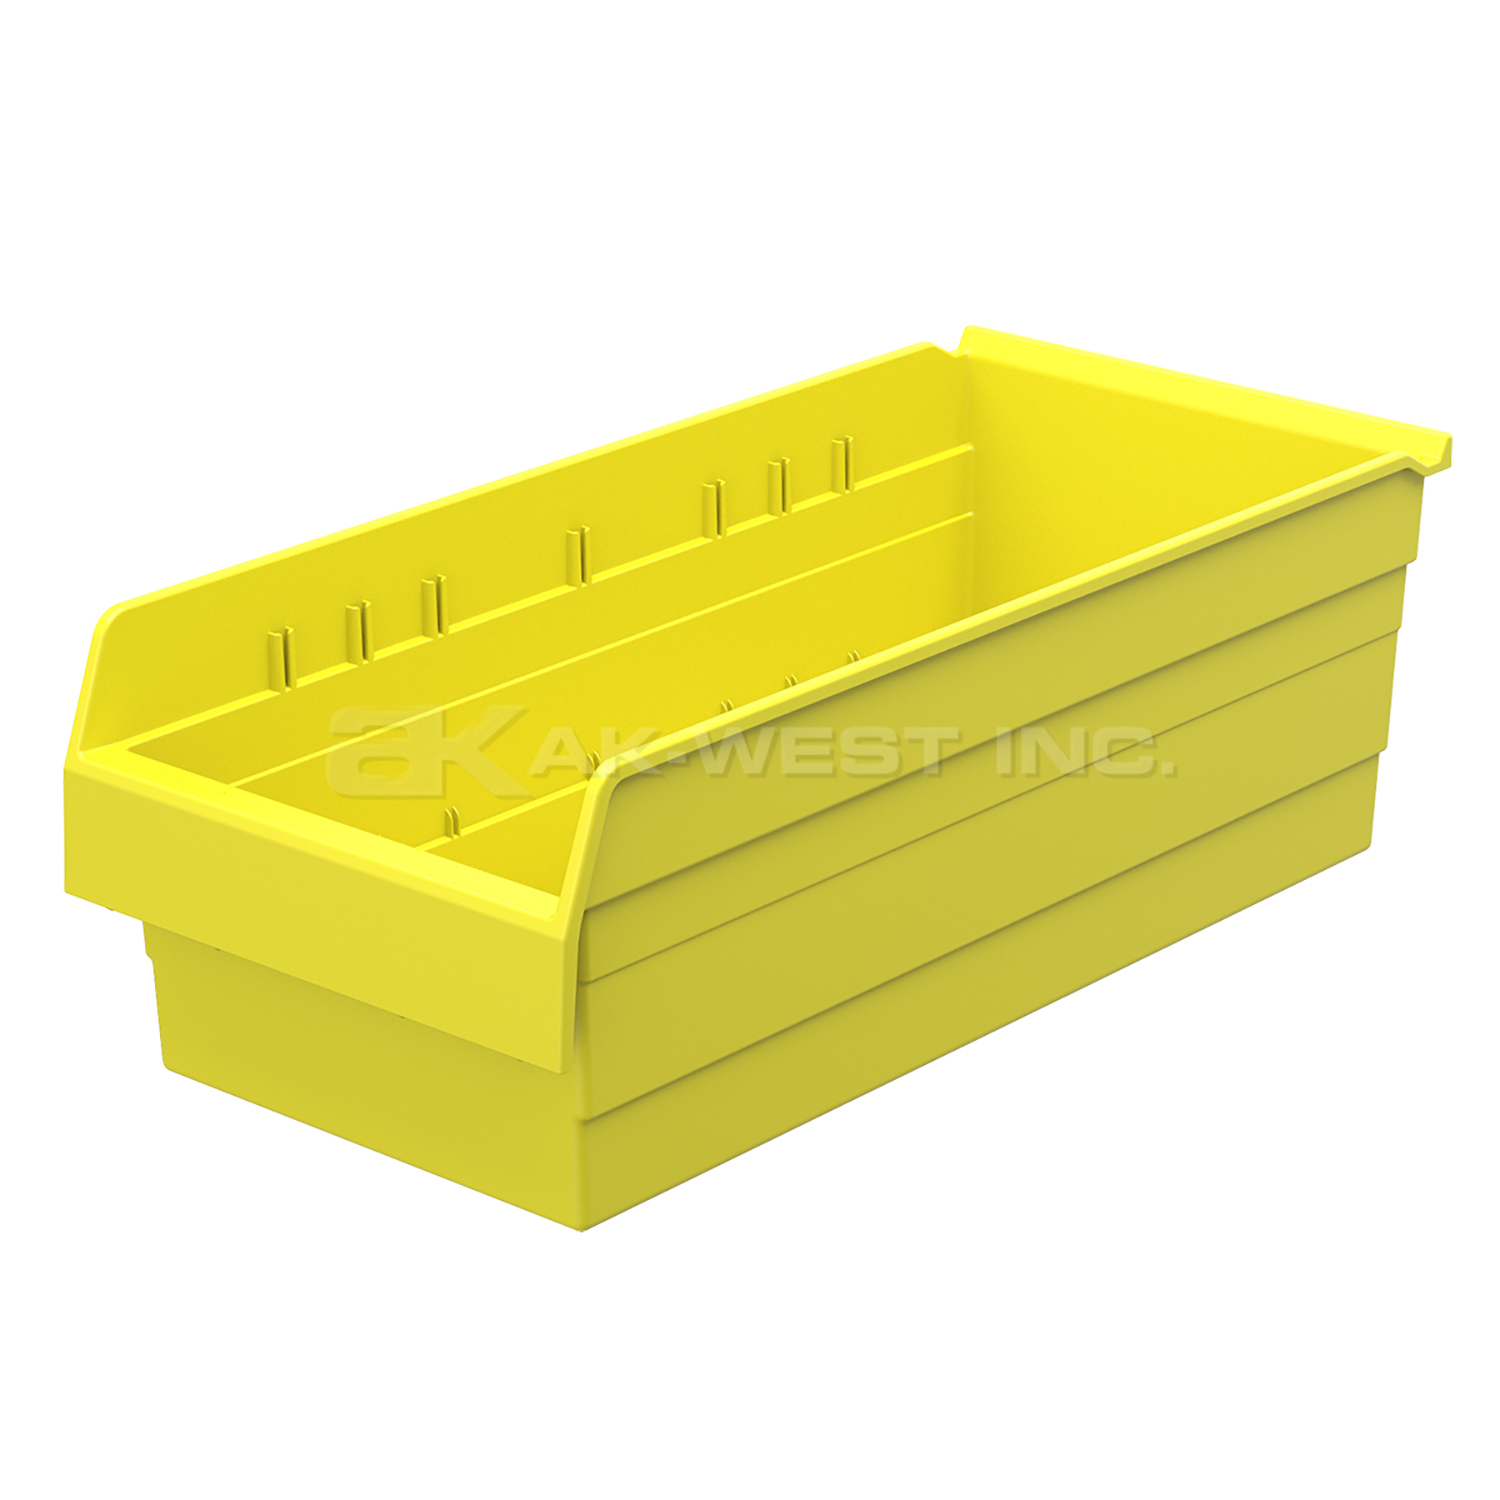 Yellow, 23-5/8" x 11-1/8" x 8" Shelf Bin (4 Per Carton)